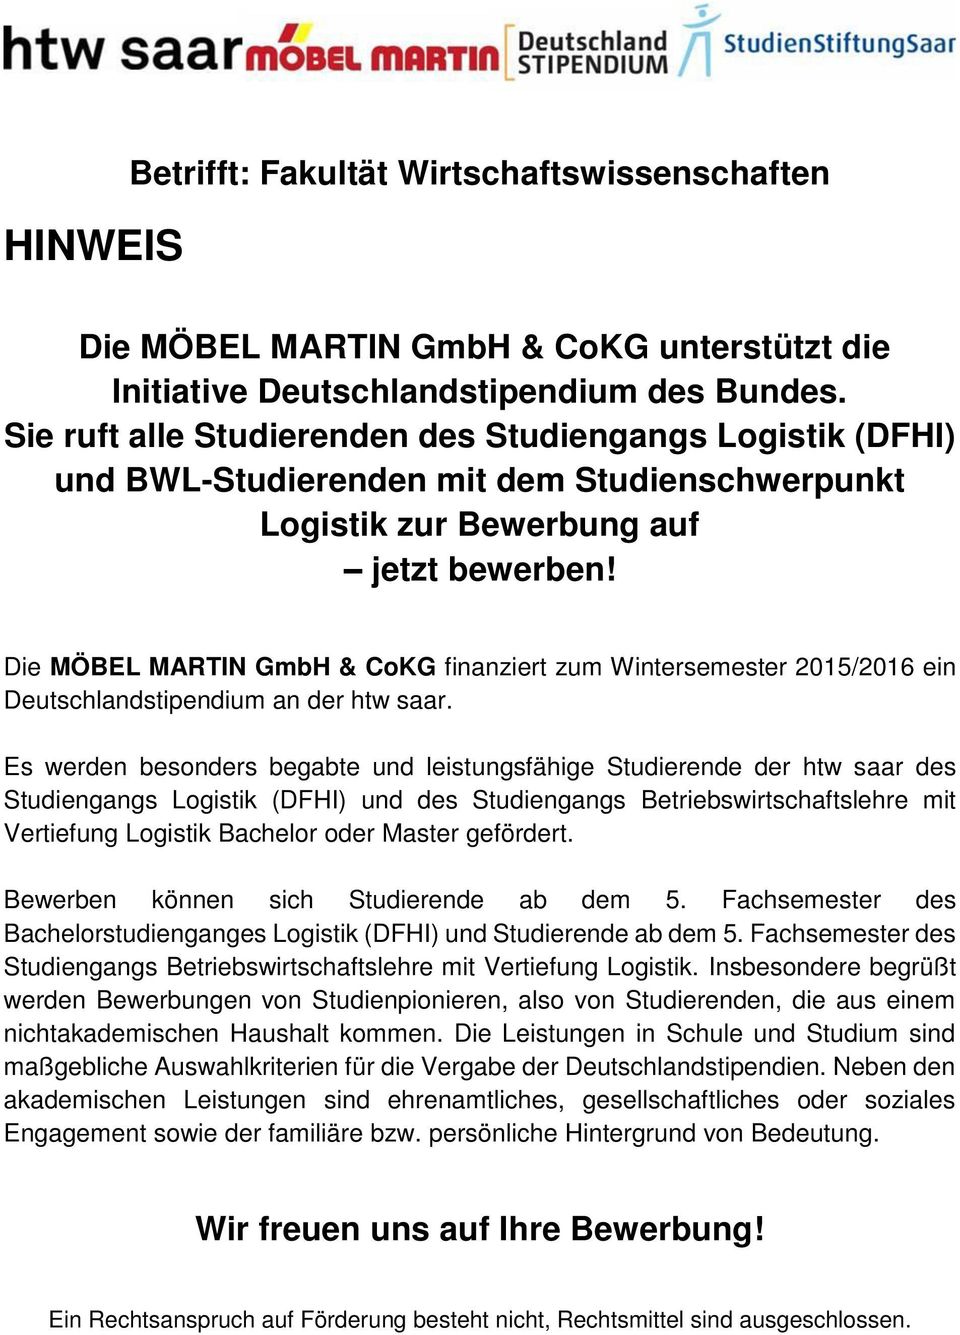 Die MÖBEL MARTIN GmbH & CoKG finanziert zum Wintersemester 2015/2016 ein Deutschlandstipendium an der htw saar.